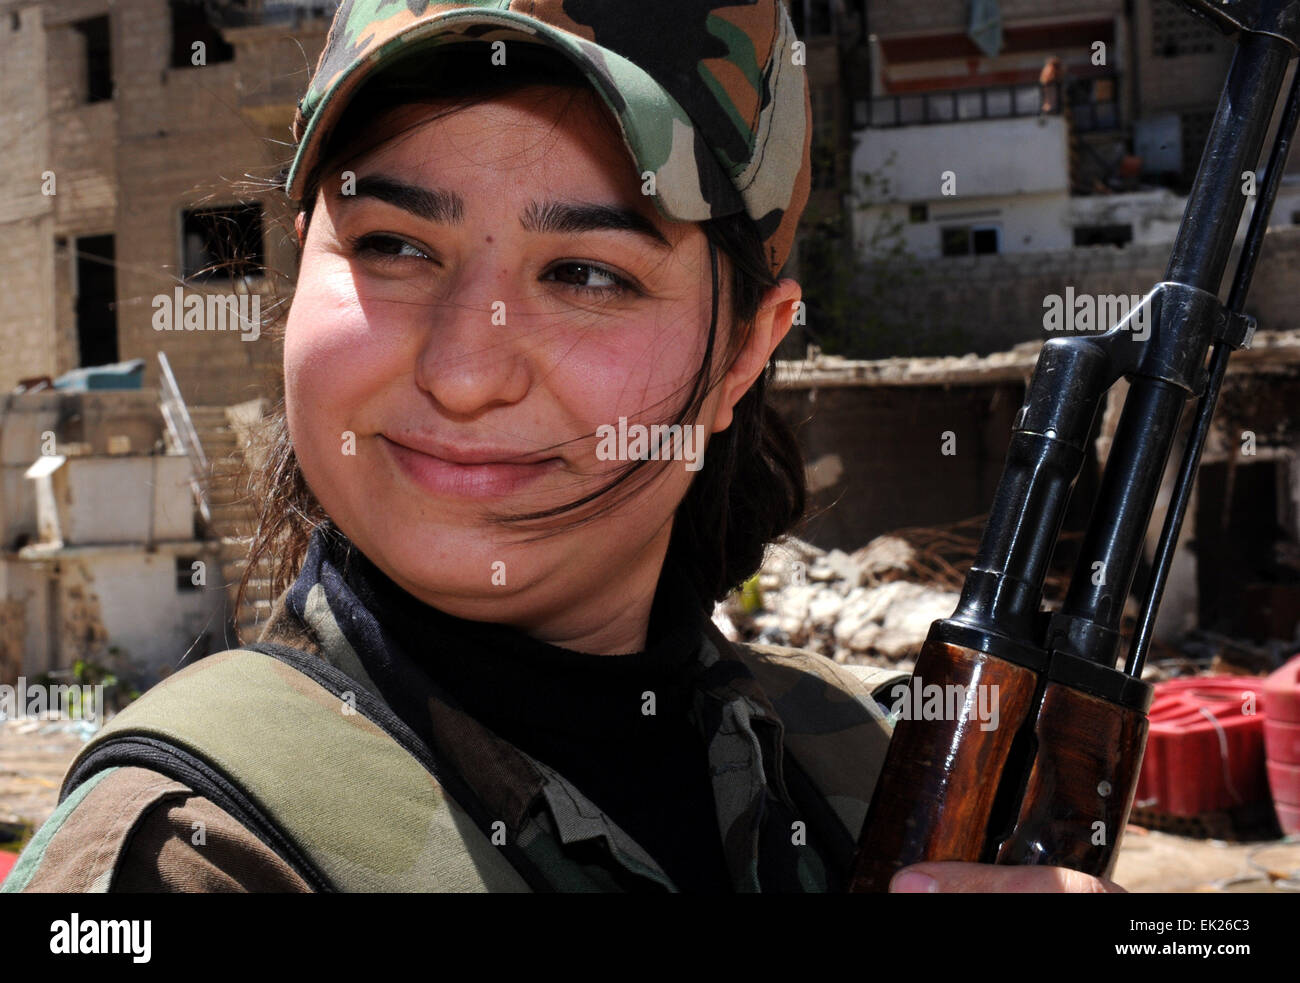 Damasco, Siria. 5 abr, 2015. Un francotirador femenino reacciona en Daraya suburbio de la capital, Damasco, Siria, el 5 de abril de 2015. Los francotiradores son miembros de la fuerza femenina en República Guardia Republicana. La unidad se compone de alrededor de 800 voluntarios, solteras, mujeres combatientes- con edades comprendidas entre los 20 y 24 años de edad. Su tarea es la de trabajar junto al ejército sirio en su lucha contra los rebeldes. © Zhang Naijie/Xinhua/Alamy Live News Foto de stock